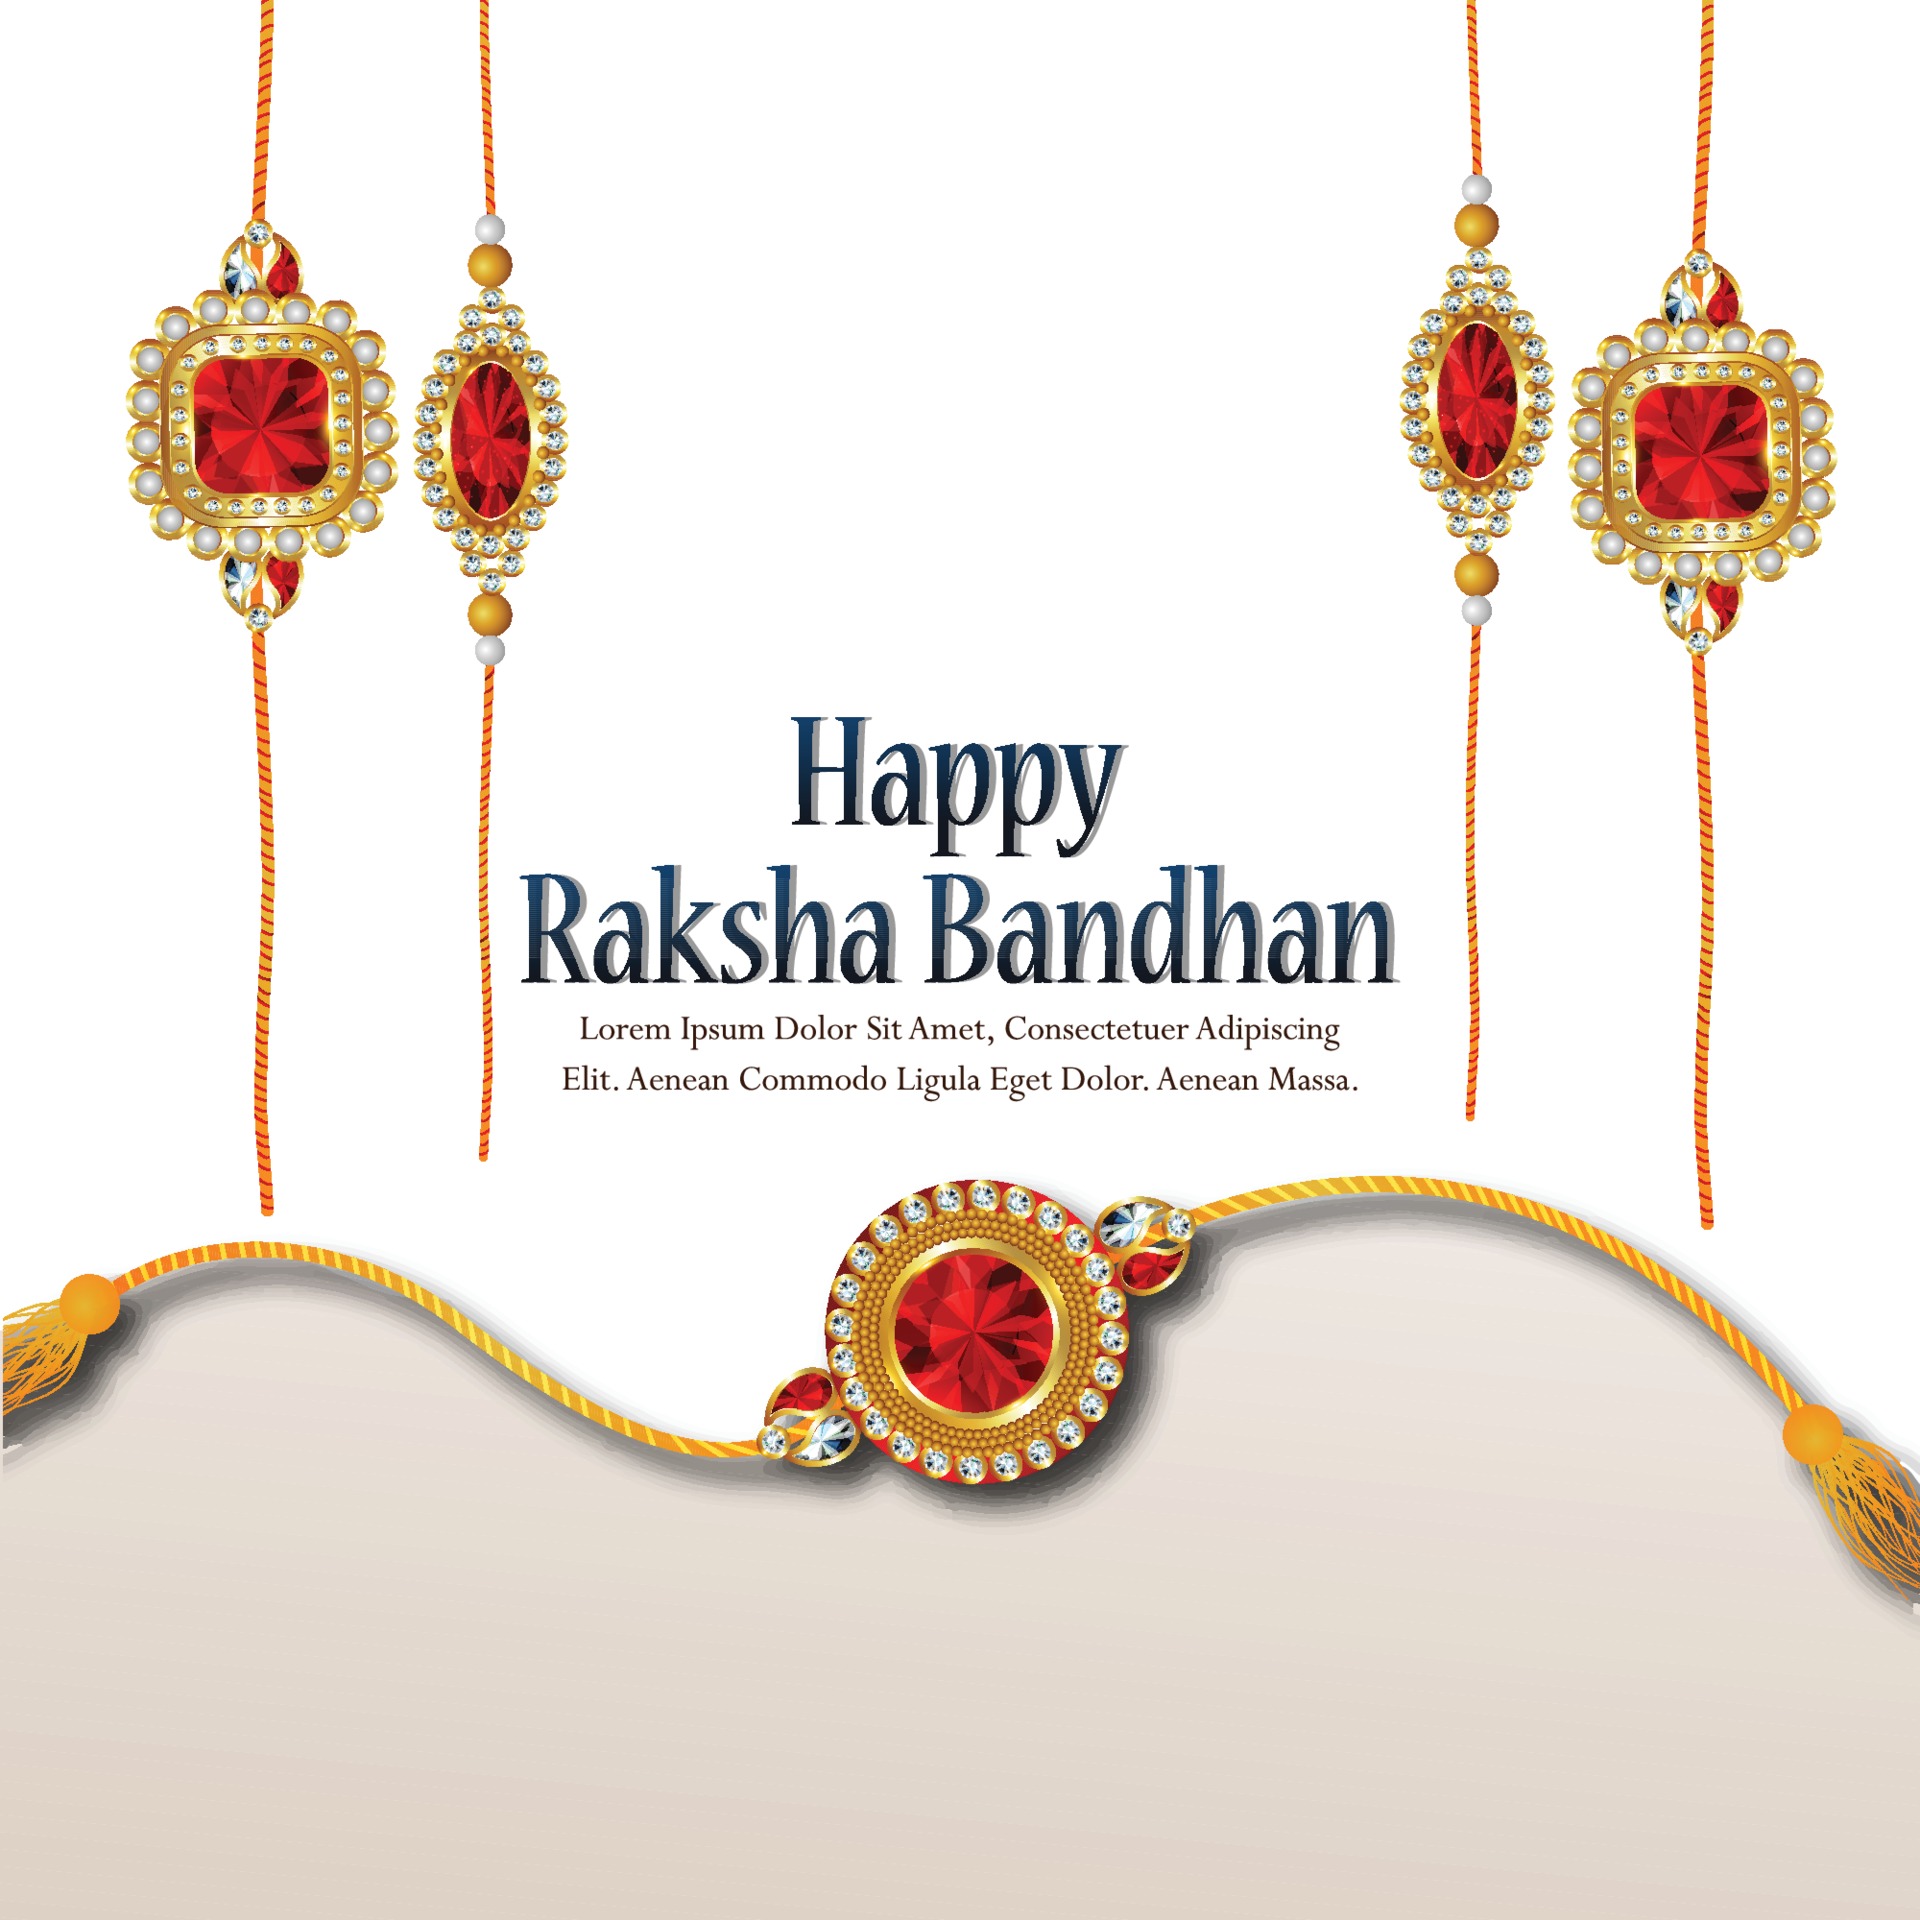 Creative rakhi for indian festival of raksha bandhan on white background  2195796 Vector Art at Vecteezy